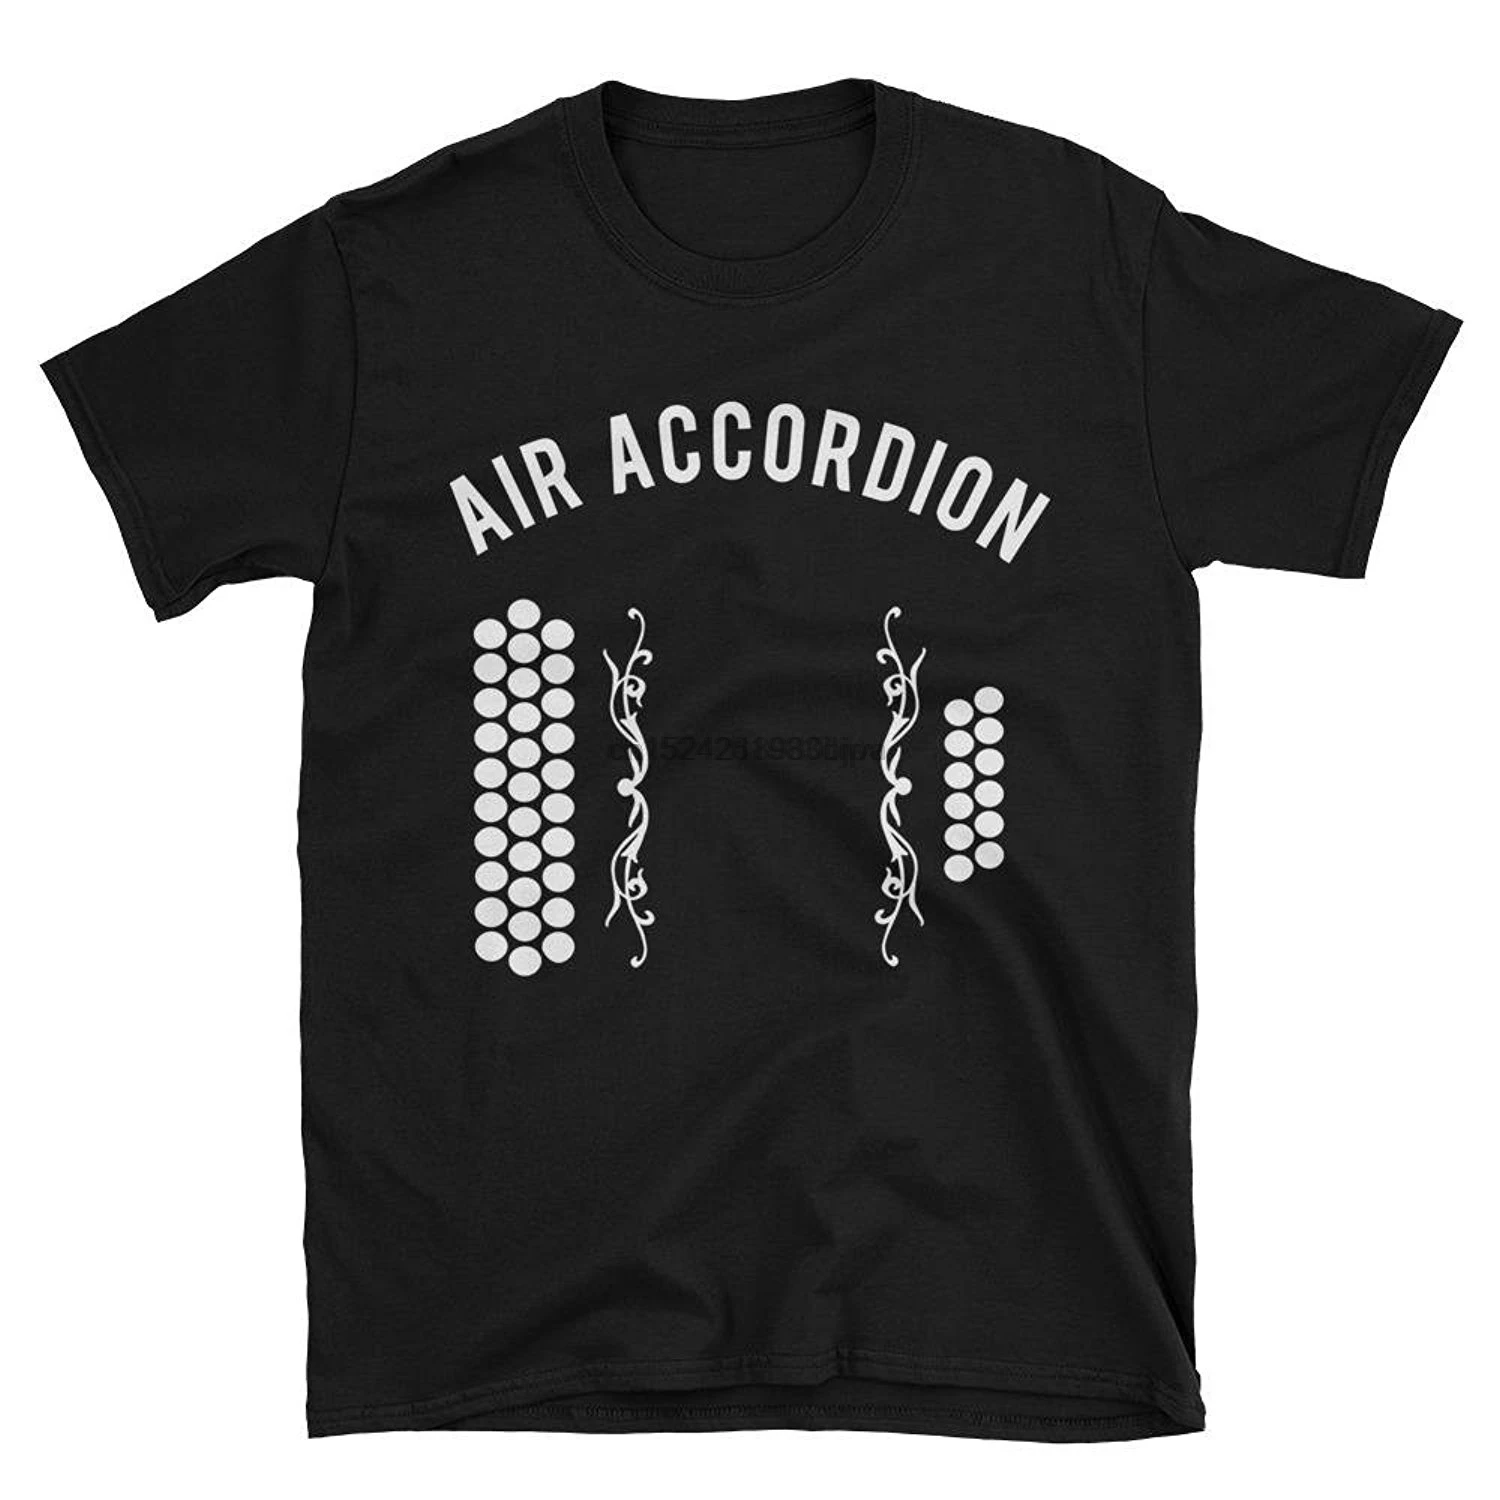 Фото Крутая музыкальная диатоническая футболка с воздушным аккордеоном Летние